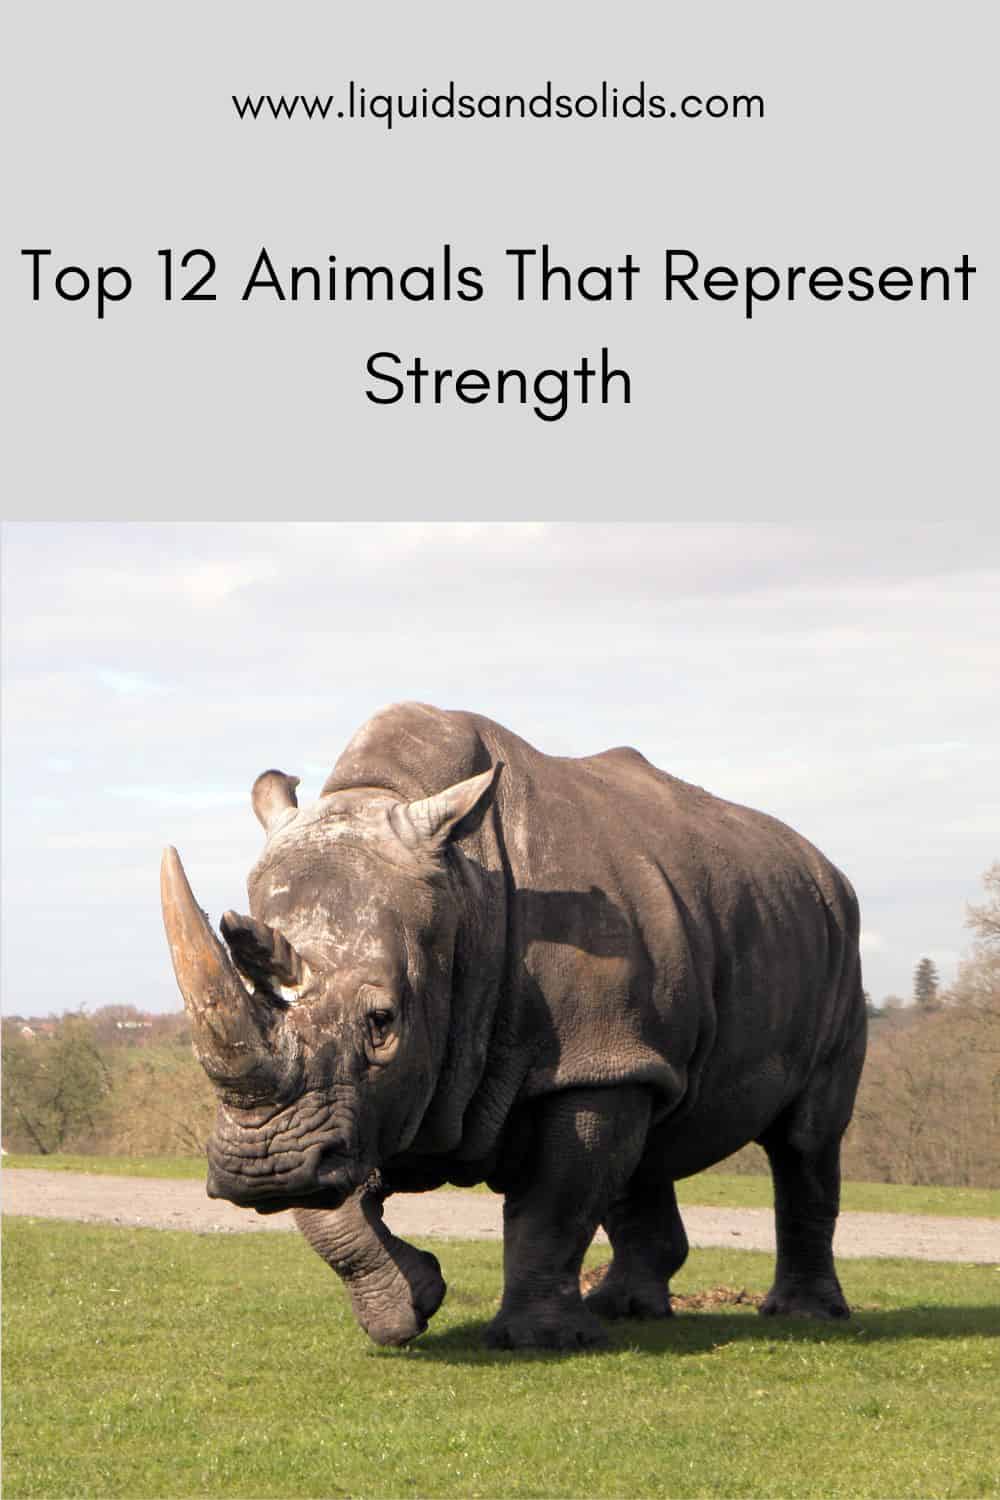  Top 12 Dyr, der repræsenterer styrke